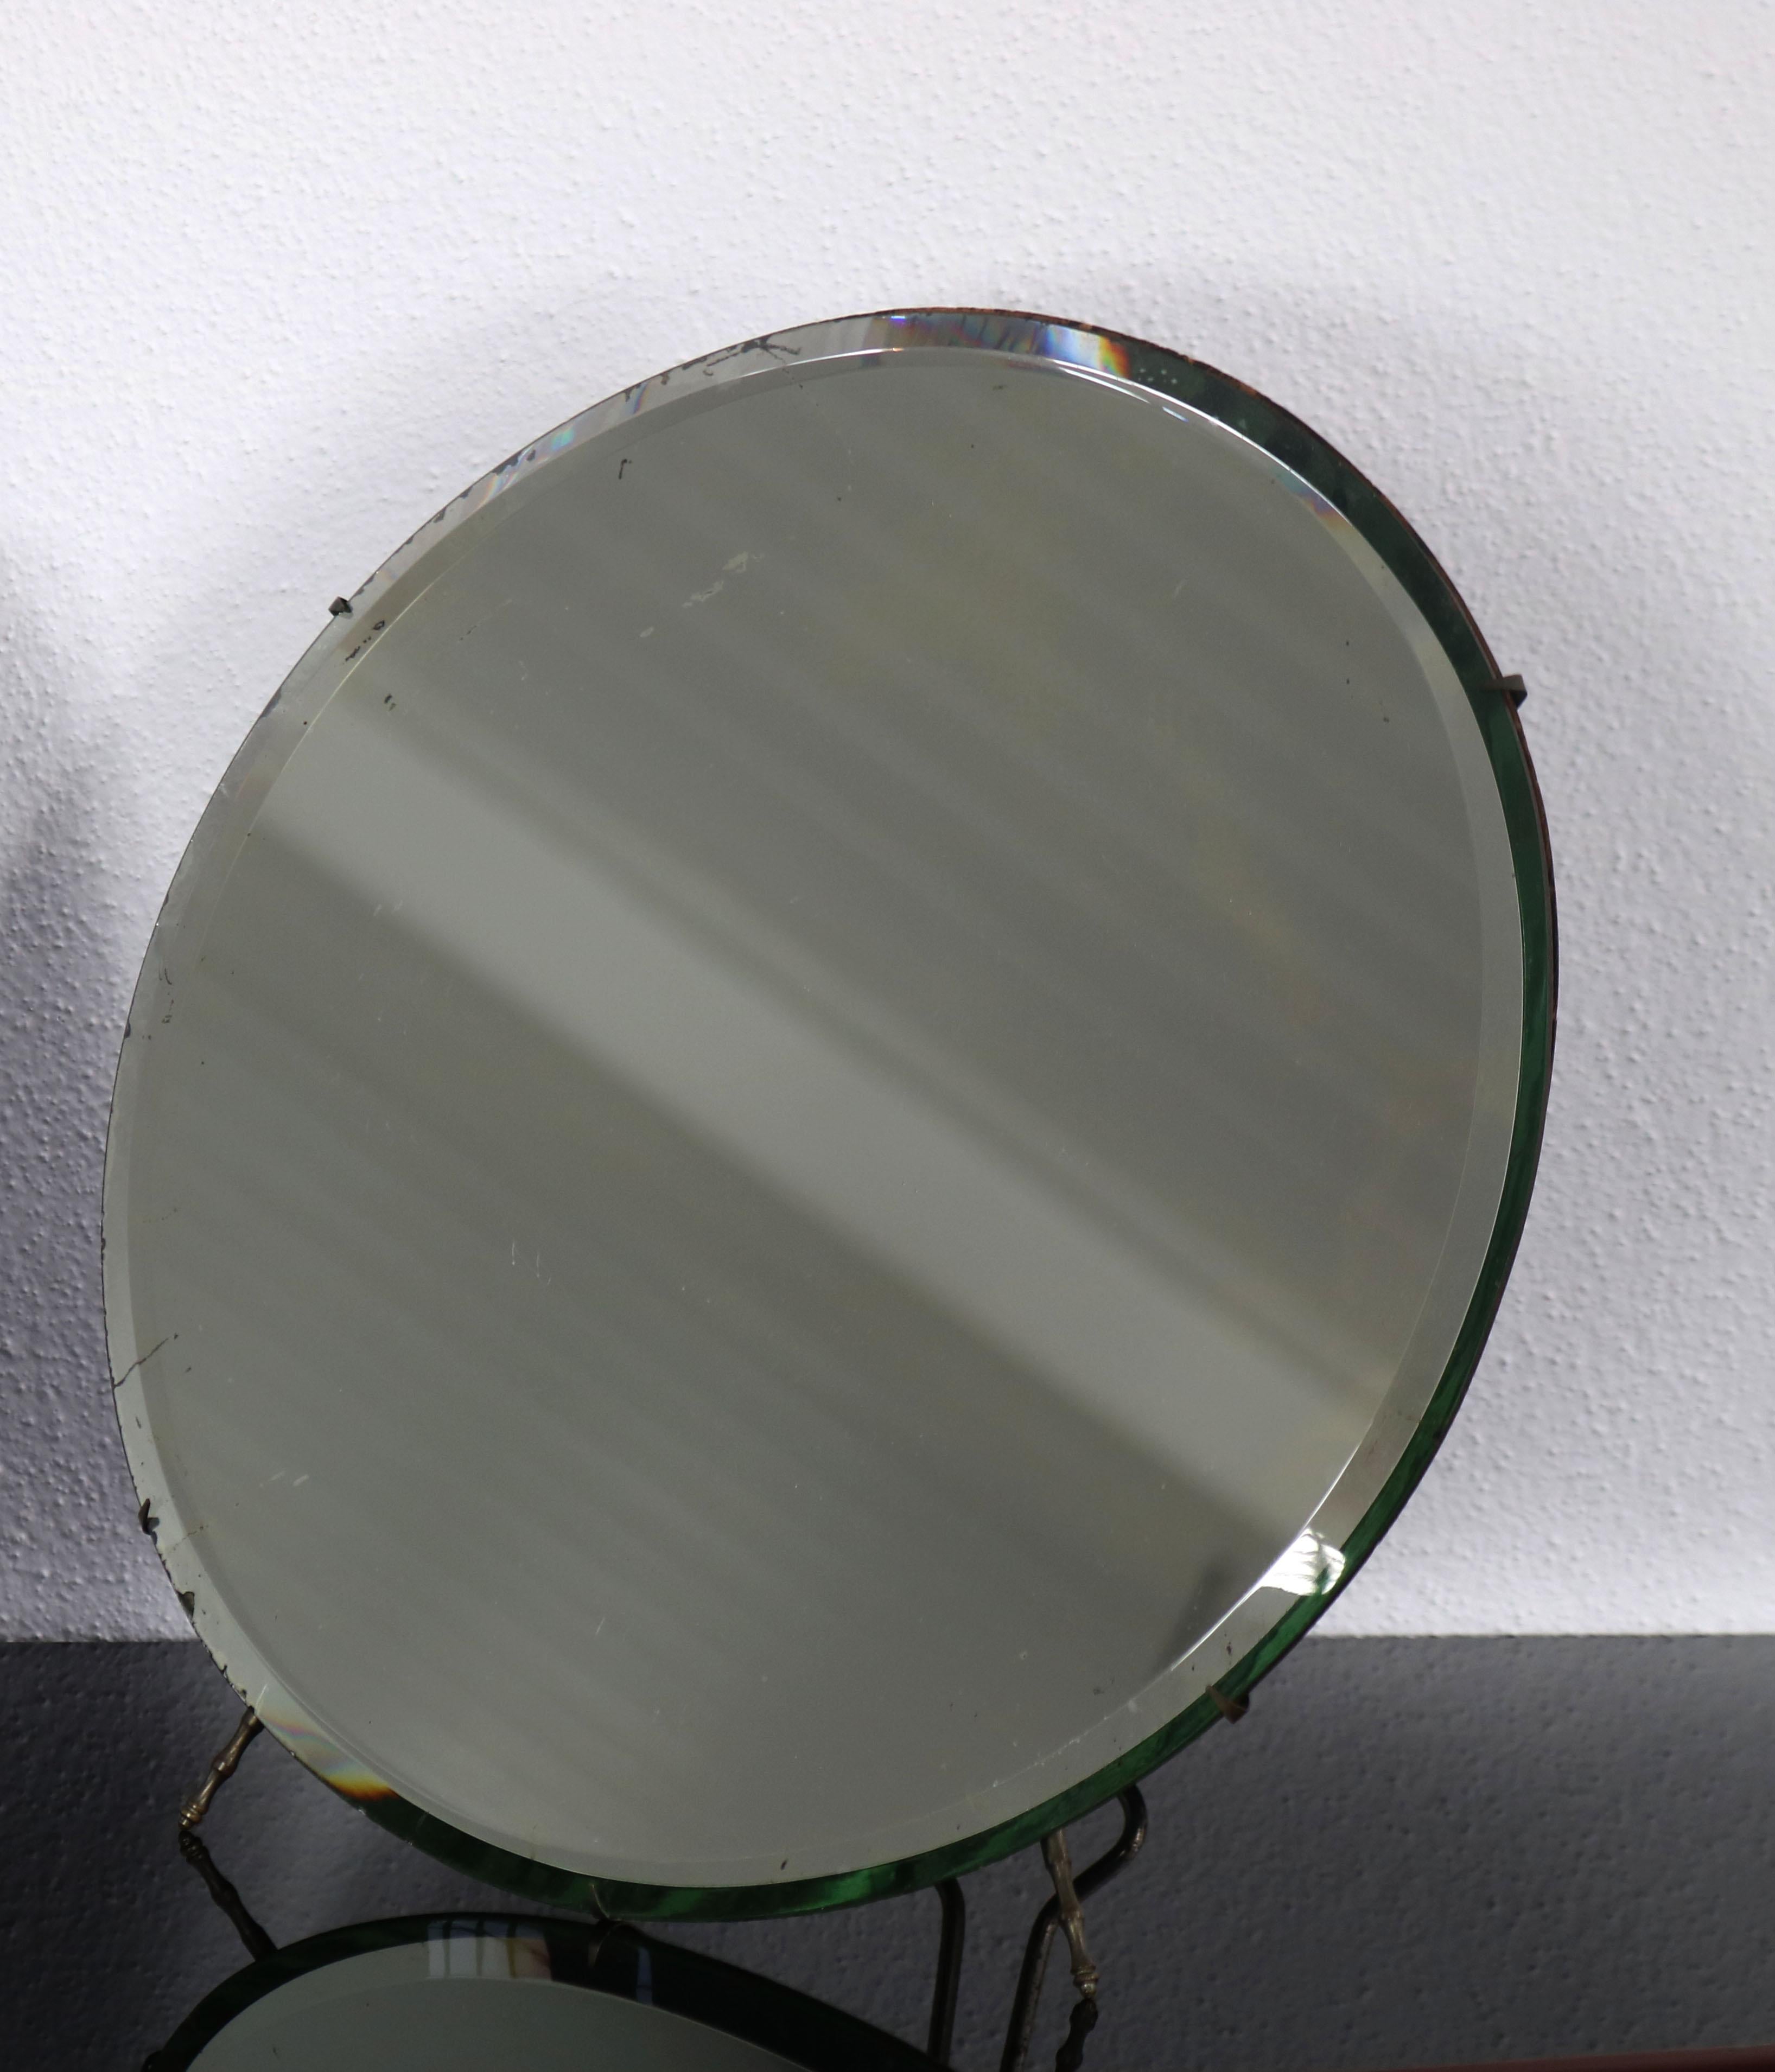 Einfacher runder Tischspiegel von Luigi Fontana & C, Italien 1950er Jahre. Der Tischspiegel besitzt einige Zeit- und Gebrauchsspuren, die dem Charme des Spiegels aber keinen Abbruch tun. 

